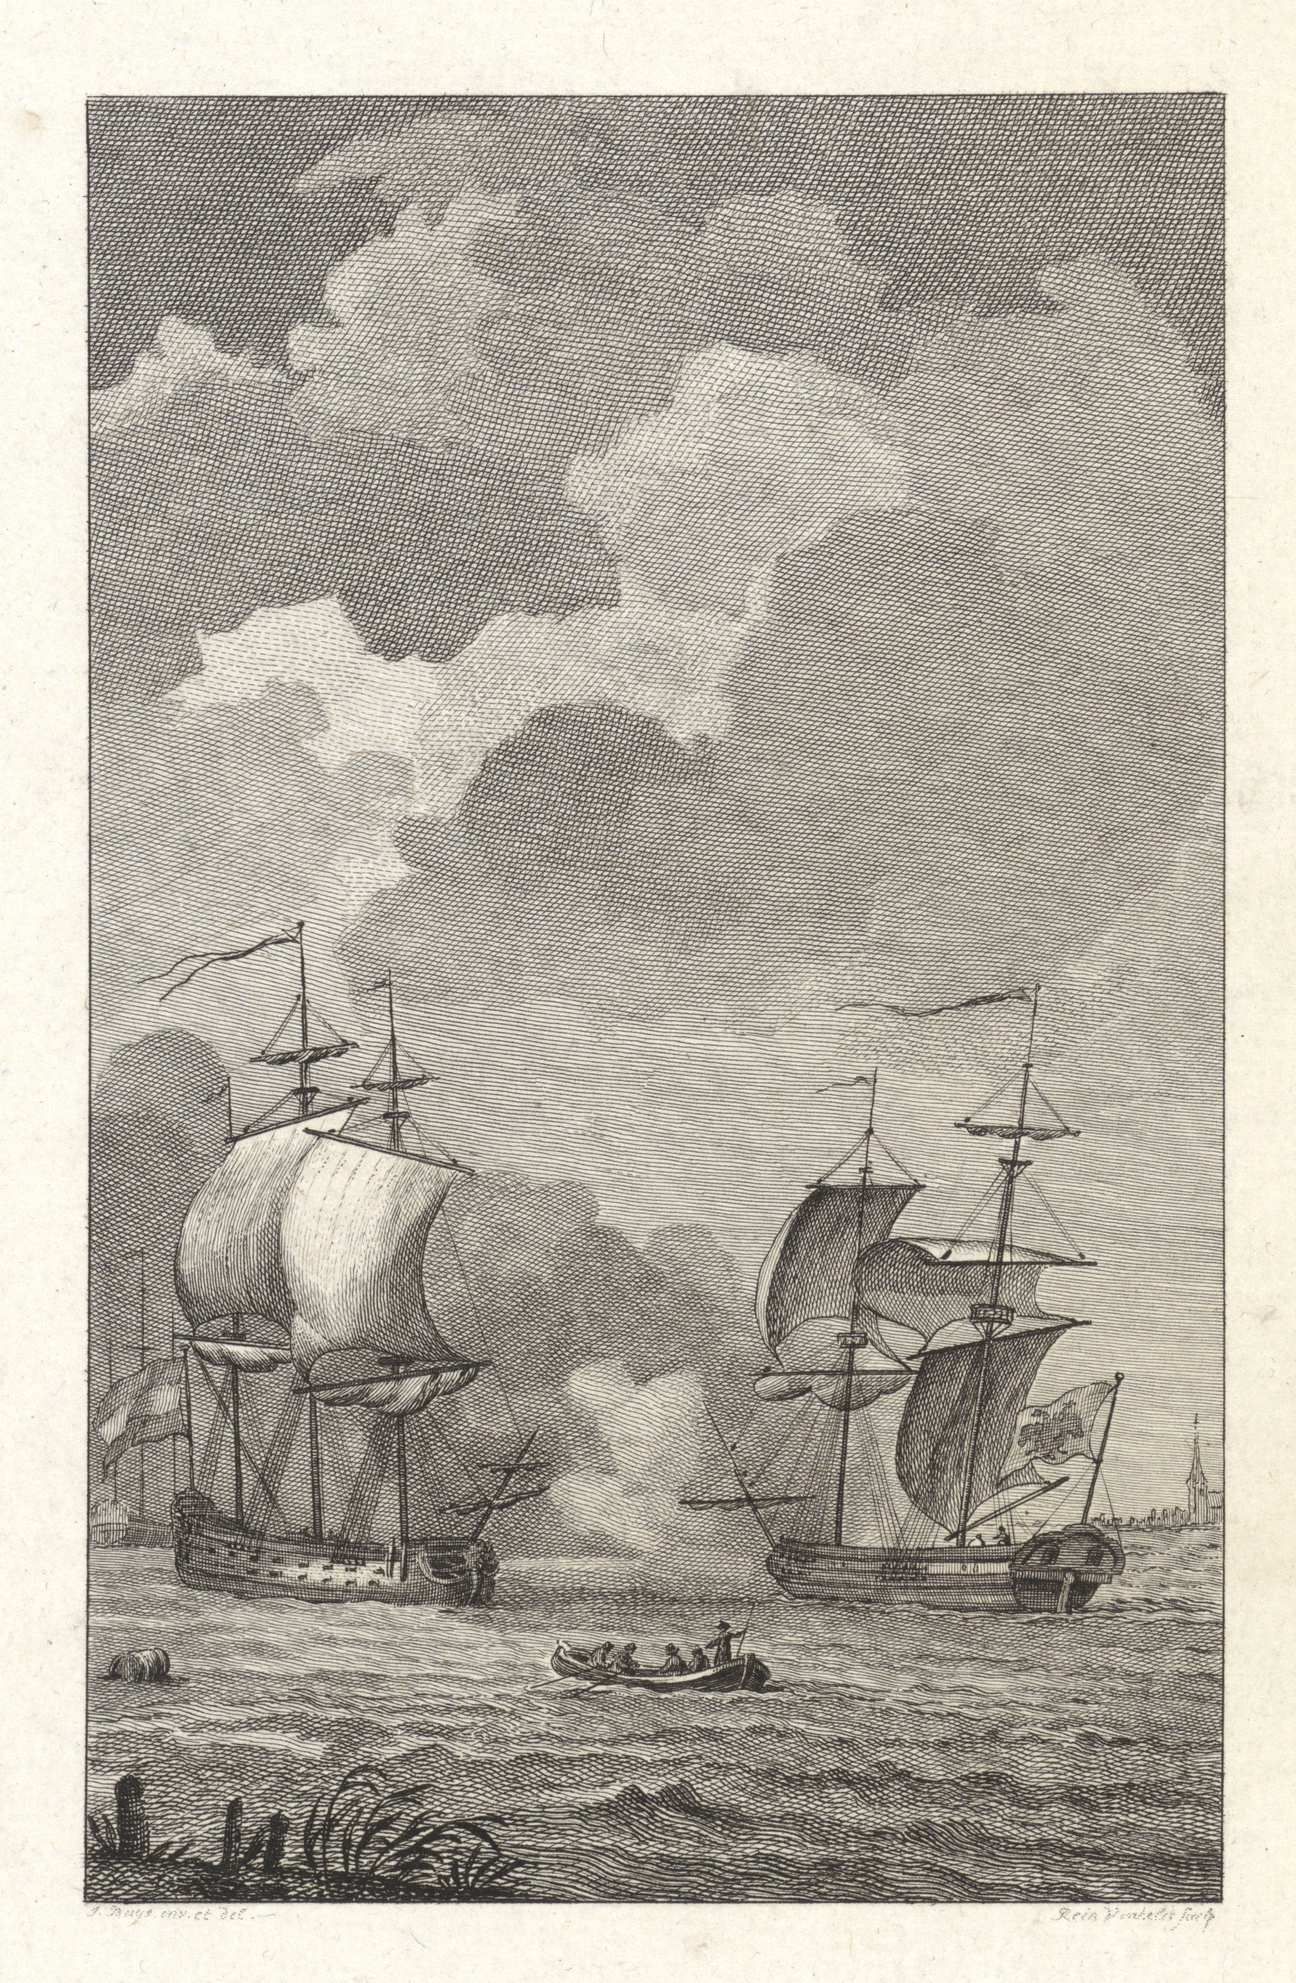 Tegenhouden van de keizerlijke brik 'Le Louis' door 'den Dolphyn' op de Schelde, 1784. Reinier Vinkeles naar Jacobus Buys)